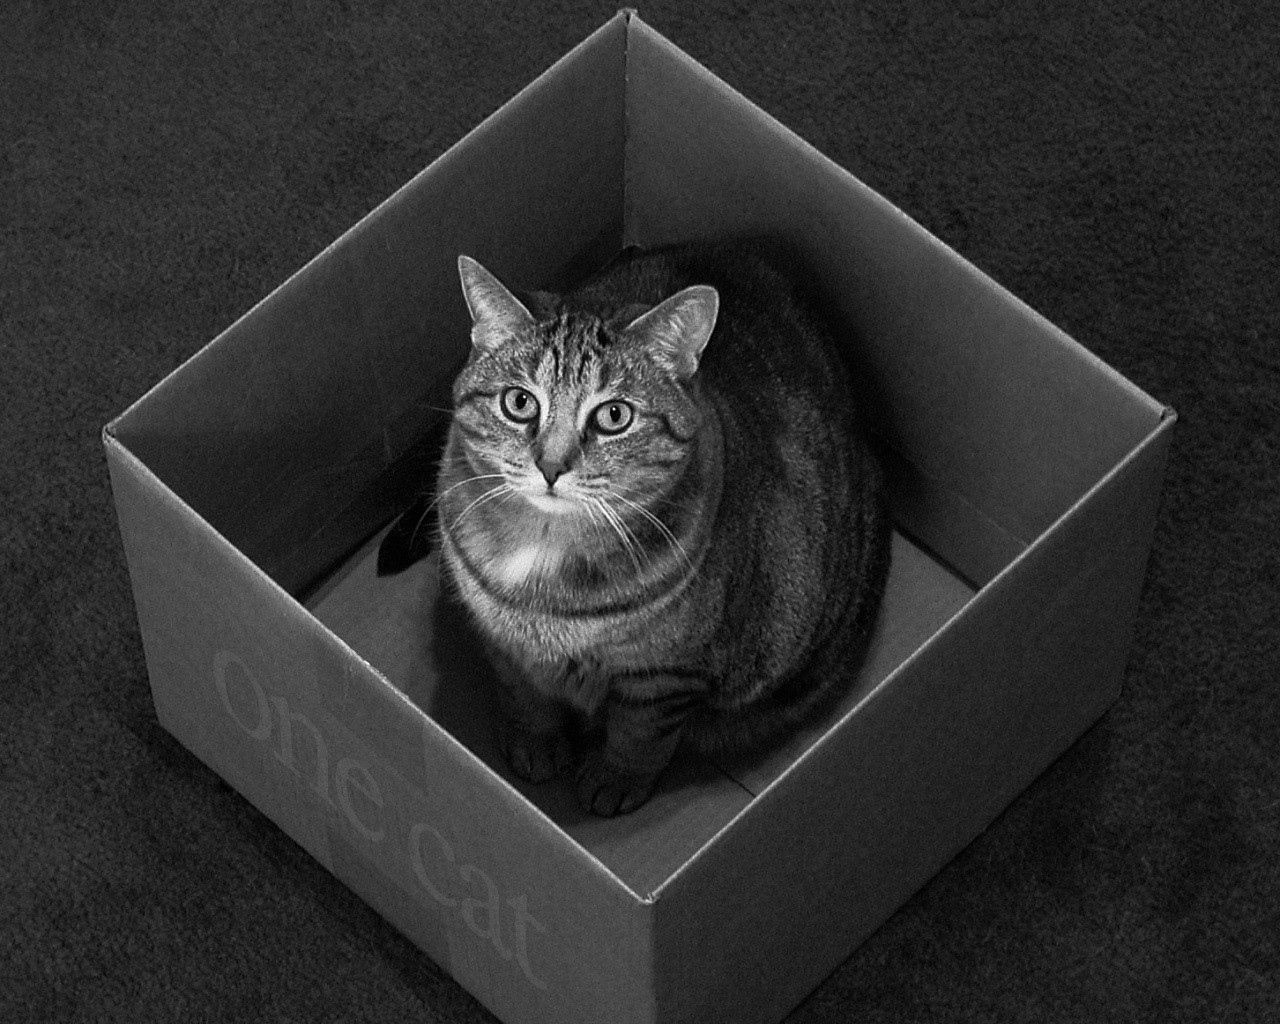 143910 免費下載壁紙 动物, 猫, 坐, 坐下, 体重, 星期四, 盒子, 包装盒 屏保和圖片